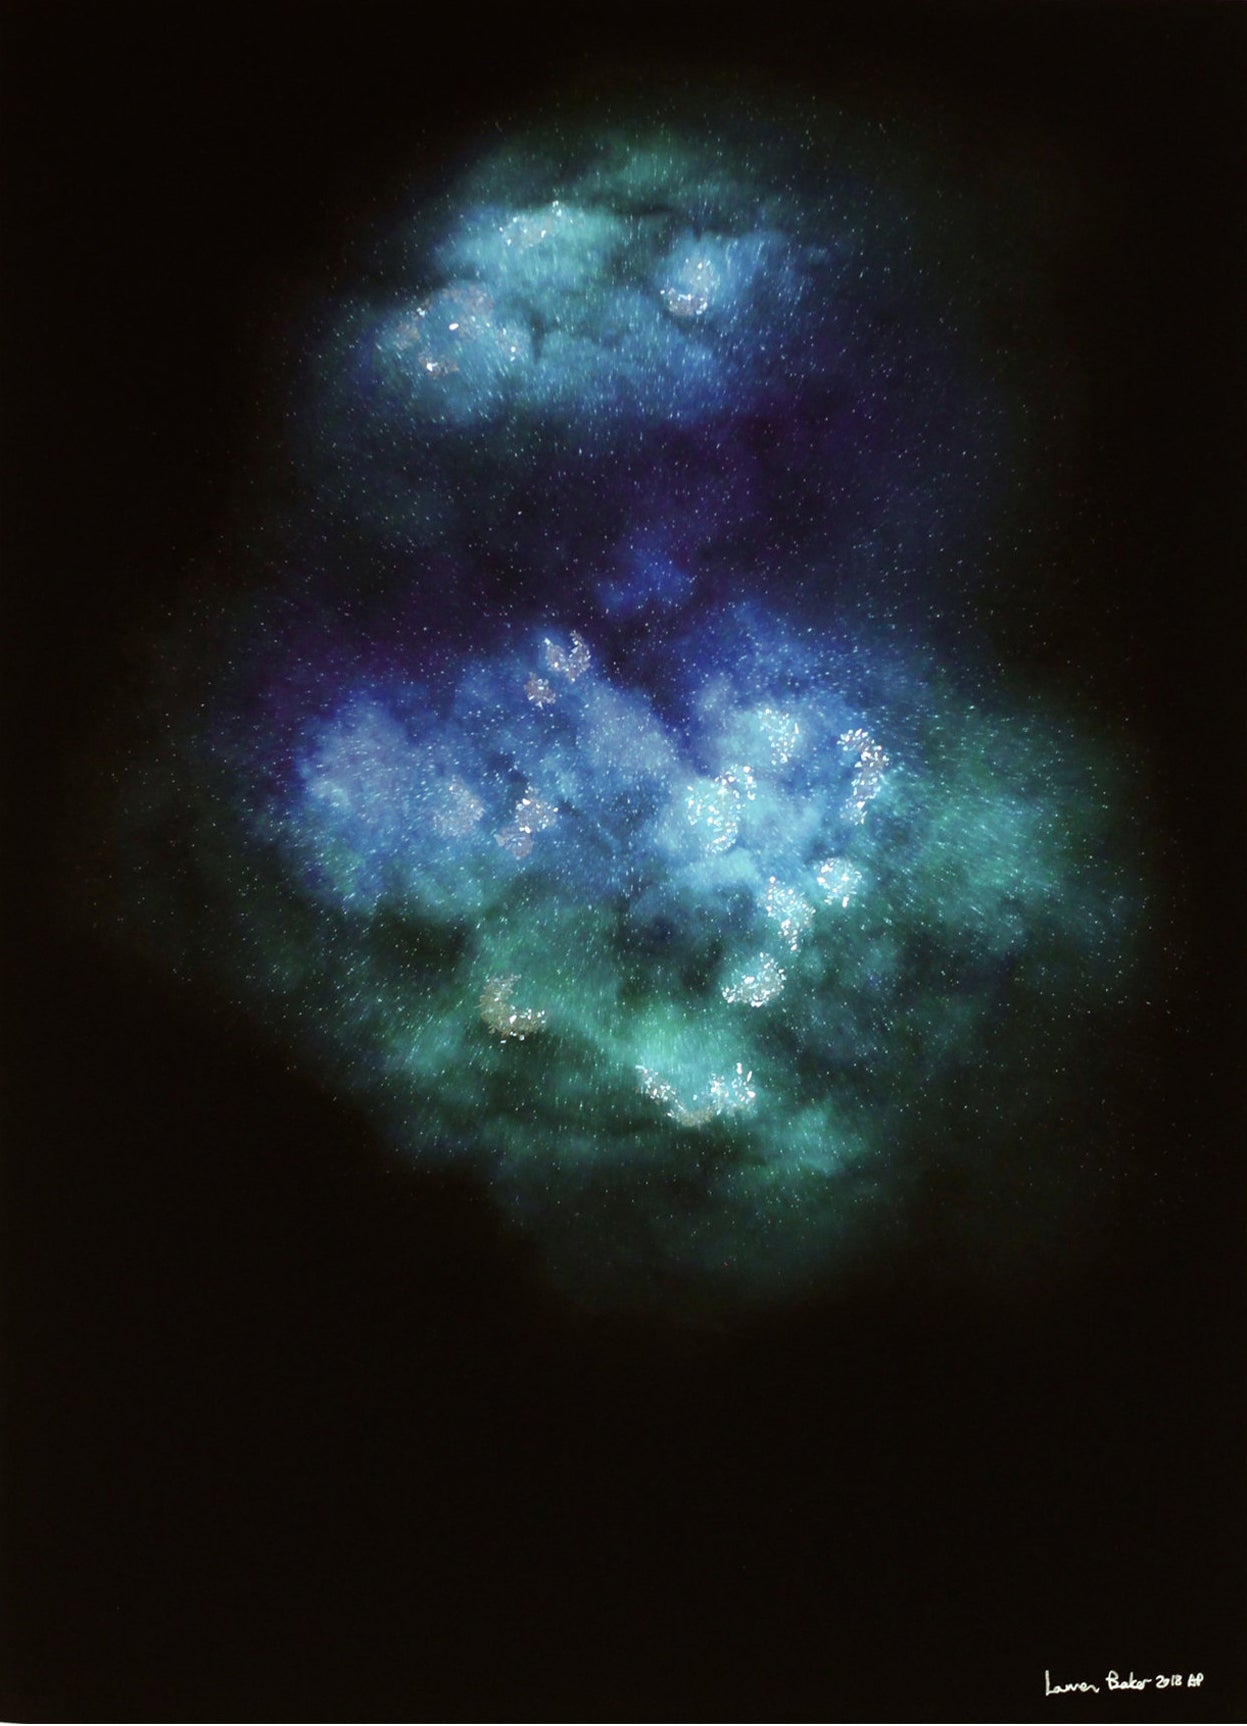 Lauren Baker - Galaxy Explosion (Diamond Dust - Turquoise)